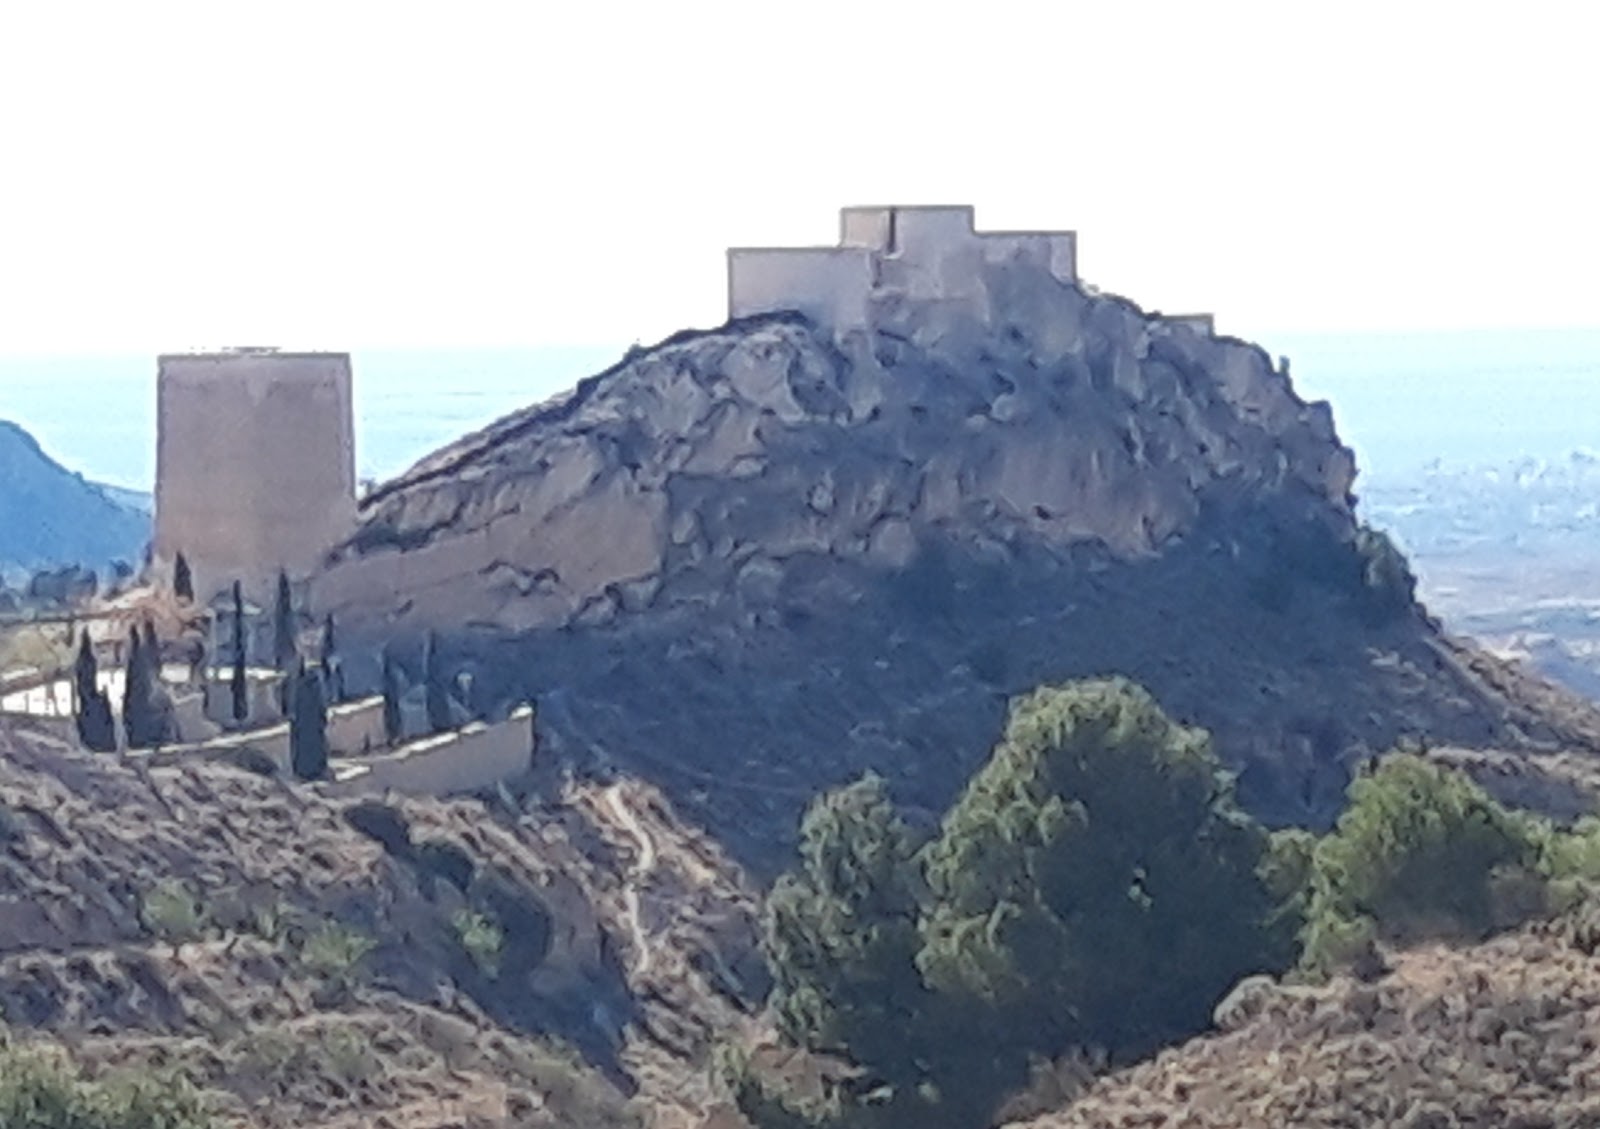 Castillo de Jijona